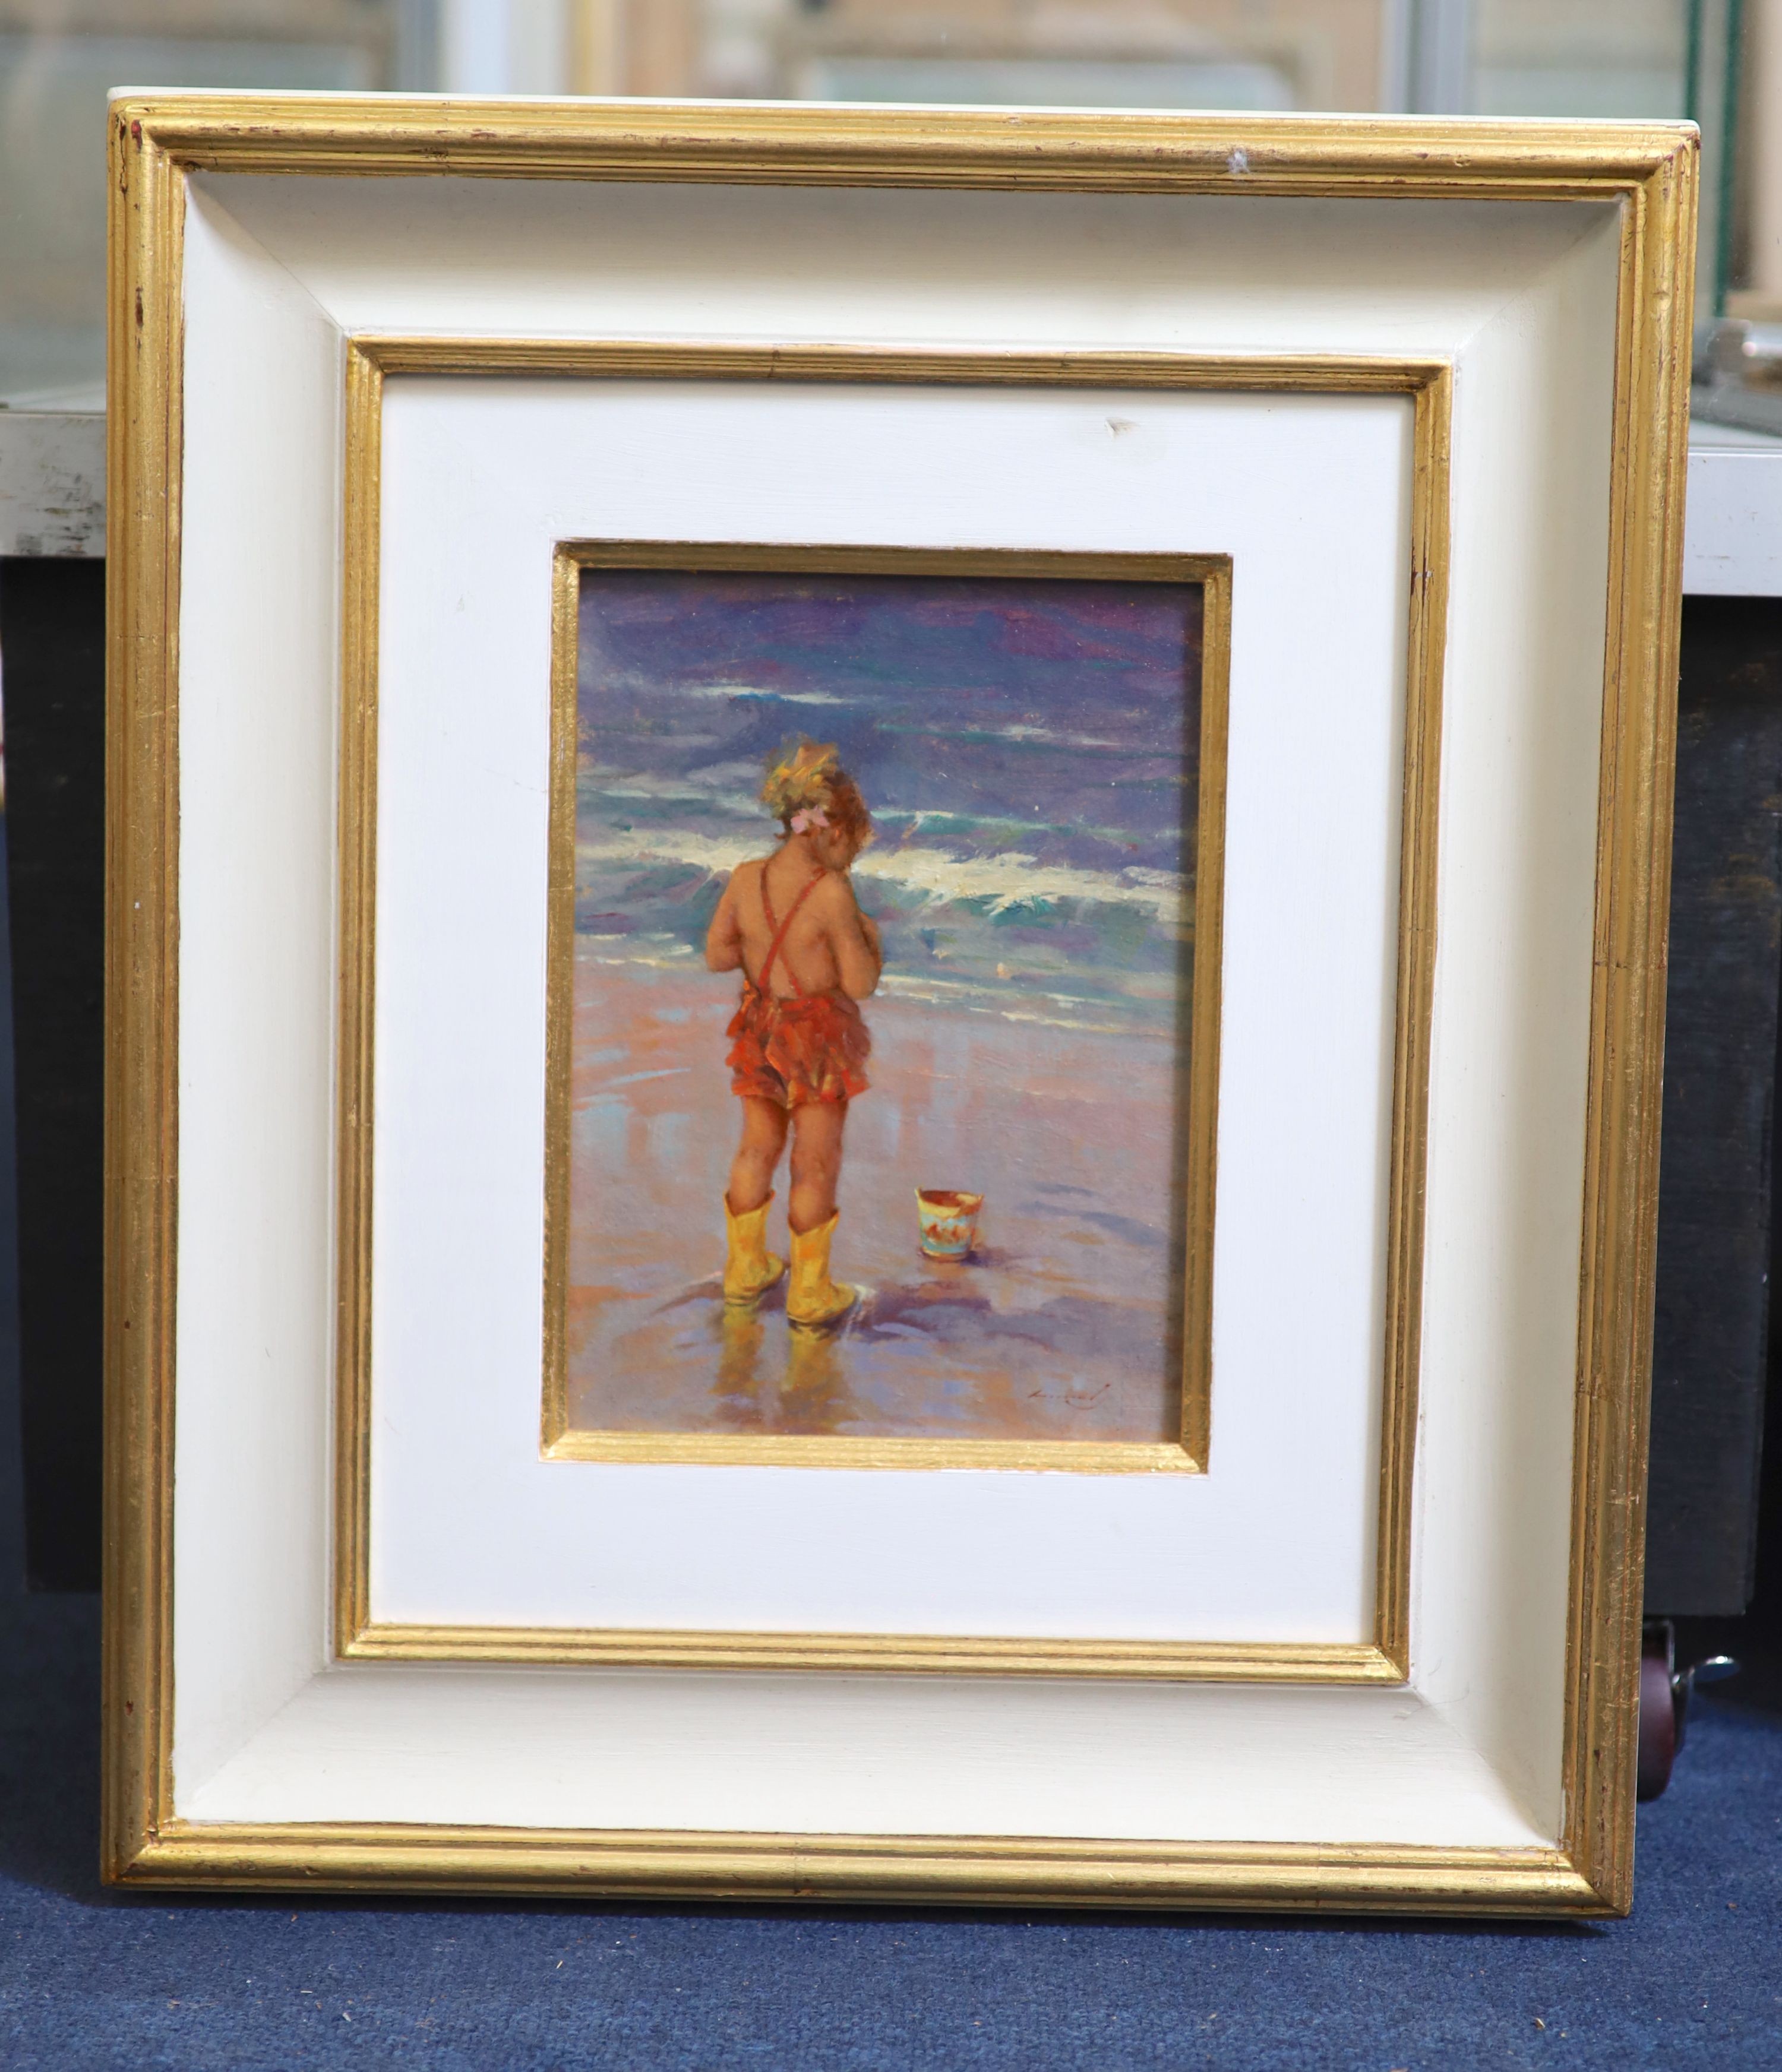 Ken Moroney (1949-2018), On the seashore, Oil on board, 24 x 17cm.